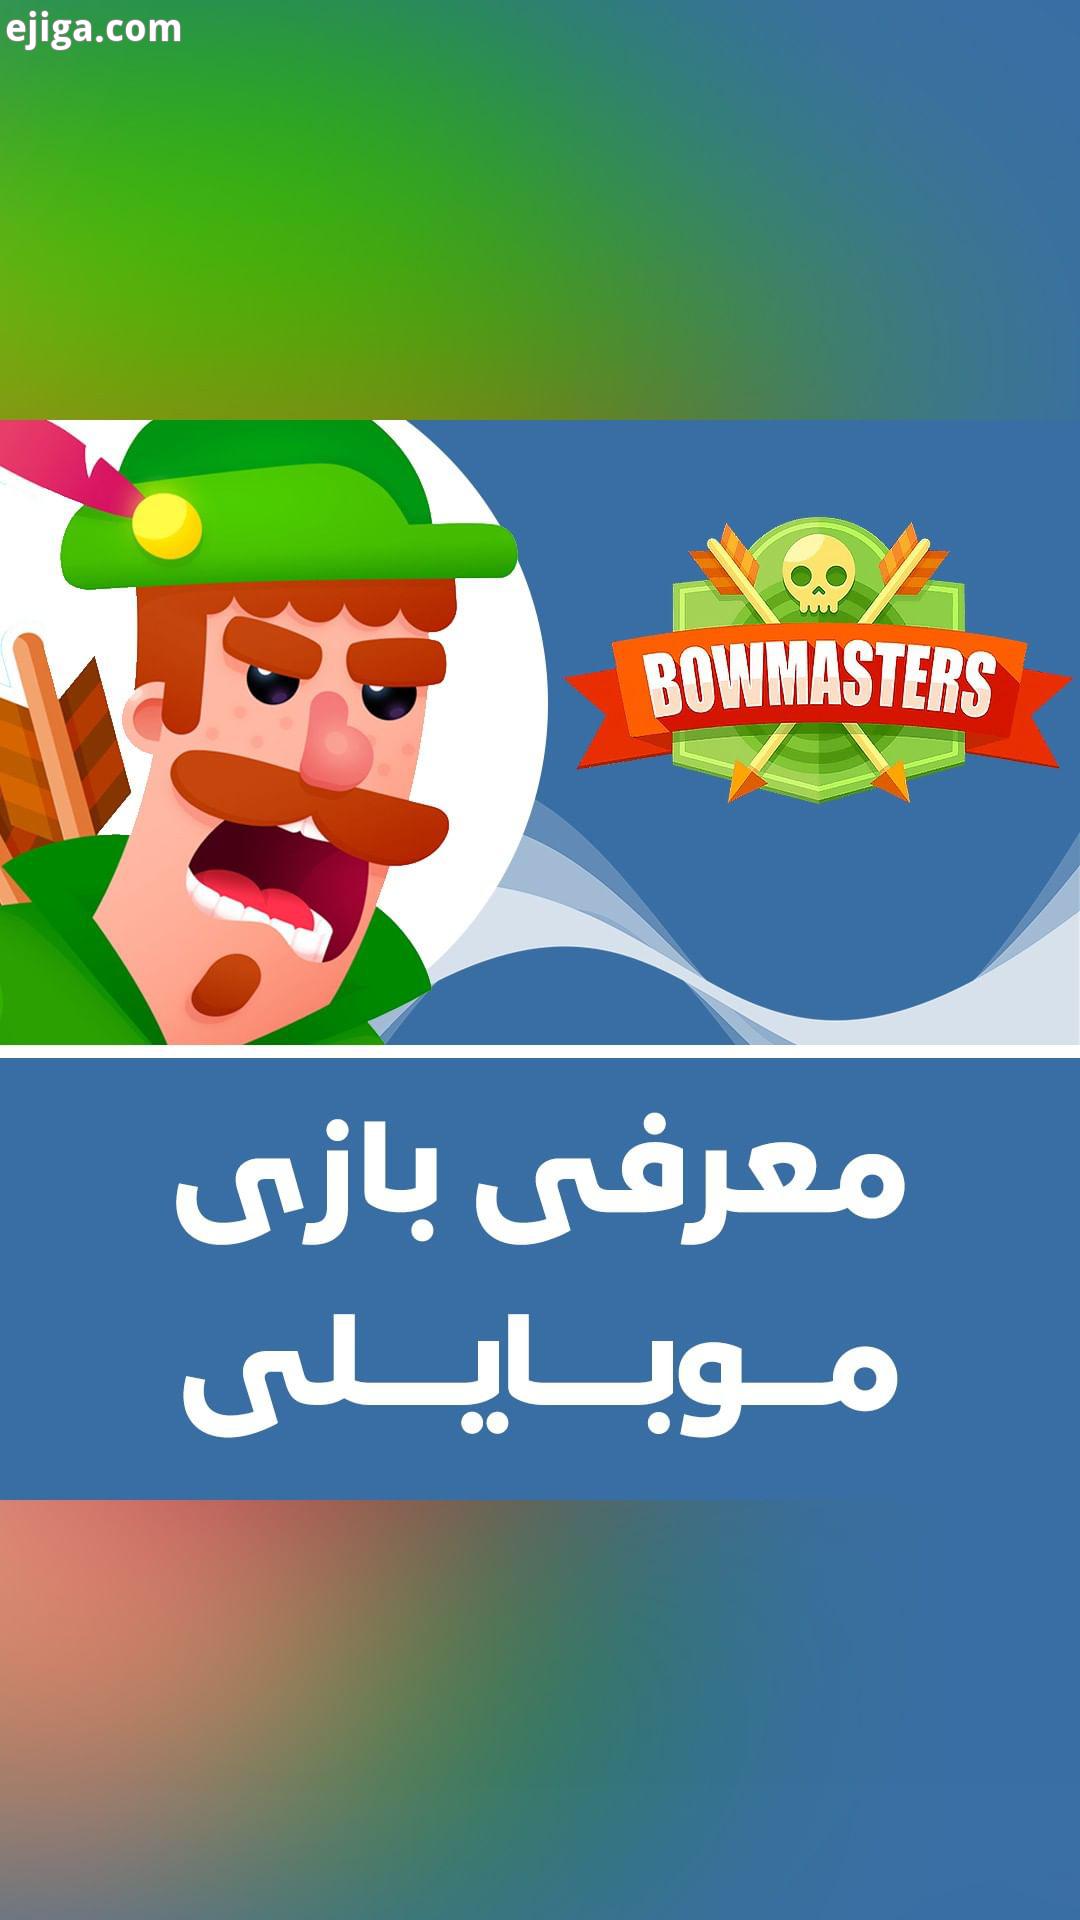 .معرفی بازی موبایلی Bowmasters اگر دنبال یک بازی موبایلی می گردید که بتوانید بی دردسر حتی بدون